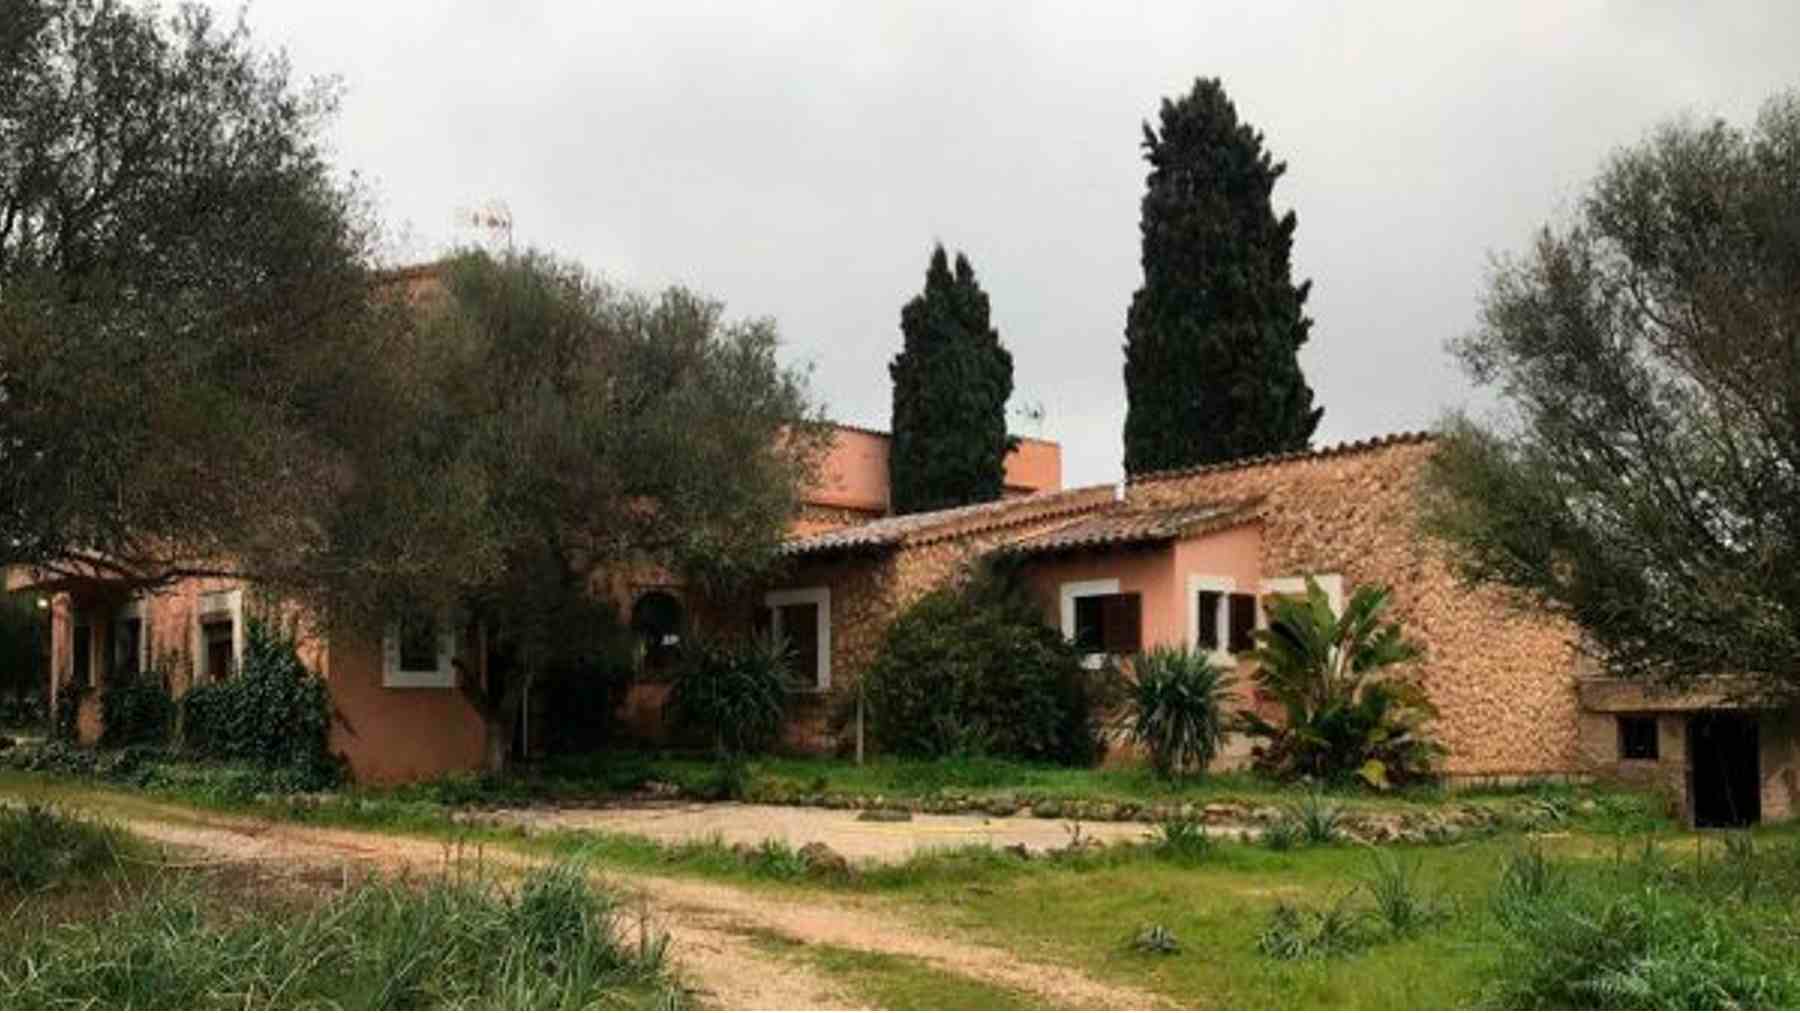 Casa propiedad del Consell en la zona residencial de Puntiró en Palma que albergará el centro de menores.